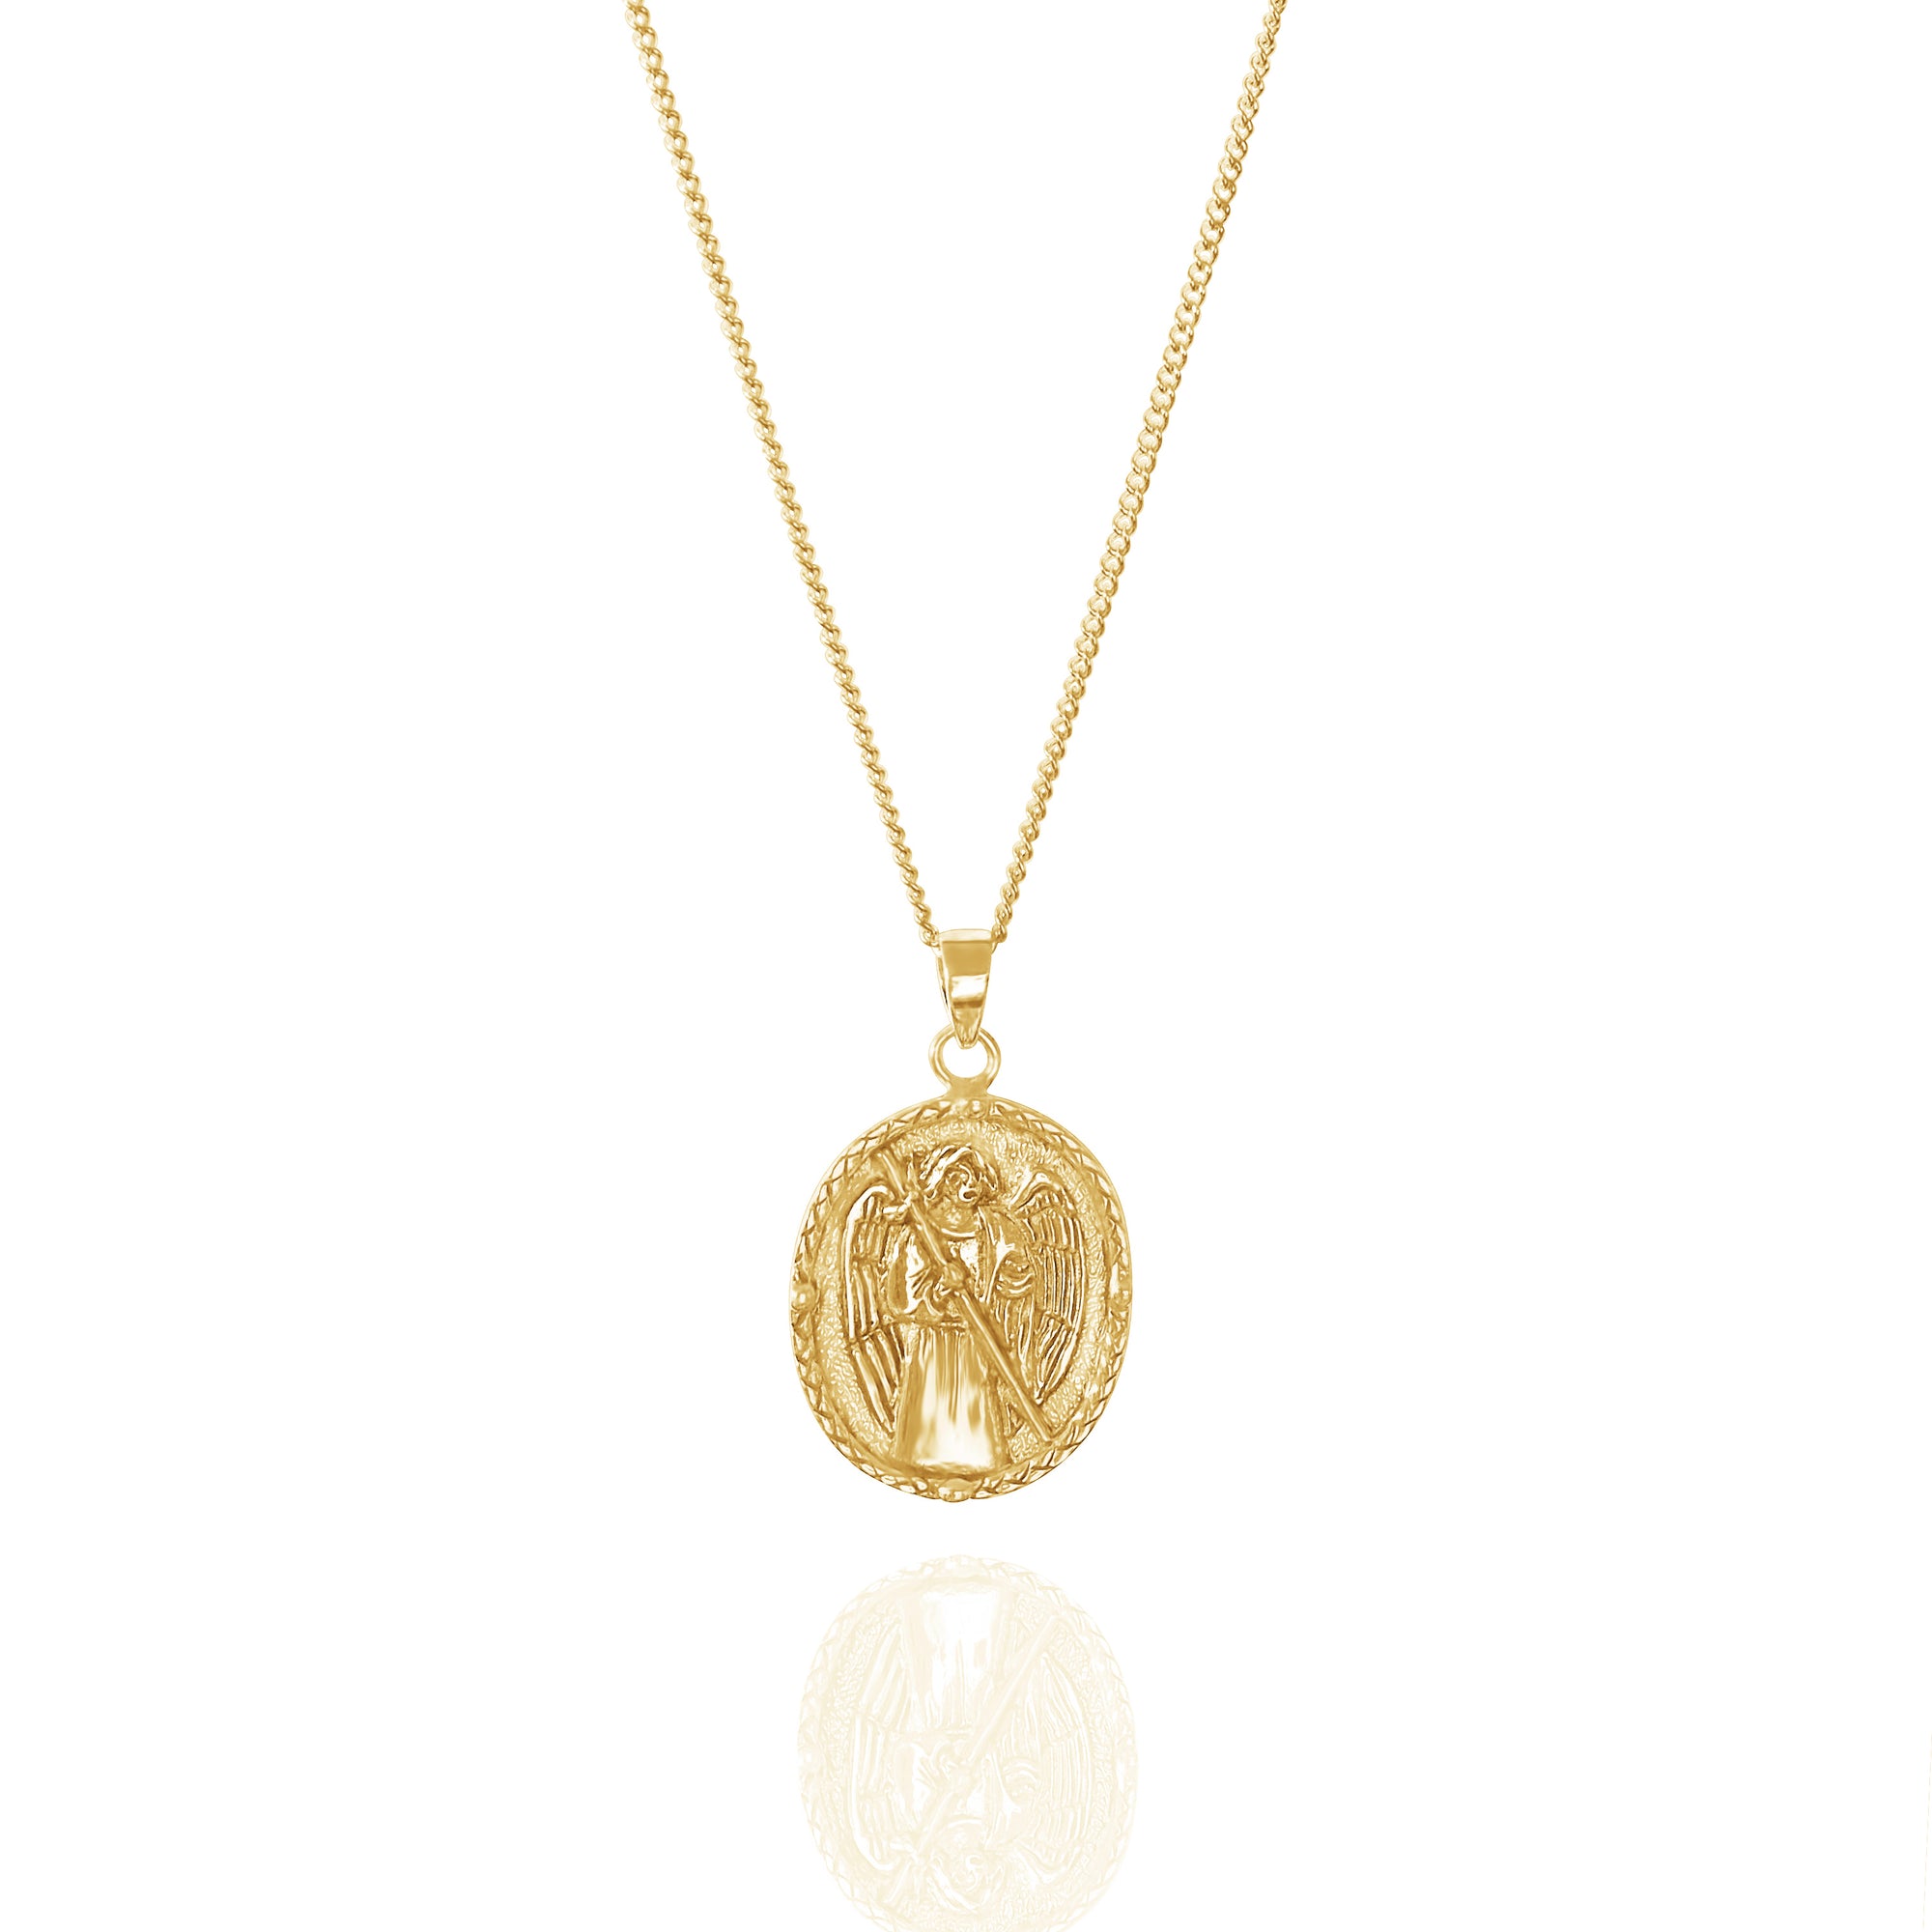 St Raphael - Patron Saint of Happy Meetings, Doctors & Nurses - Gold Pendant Necklace